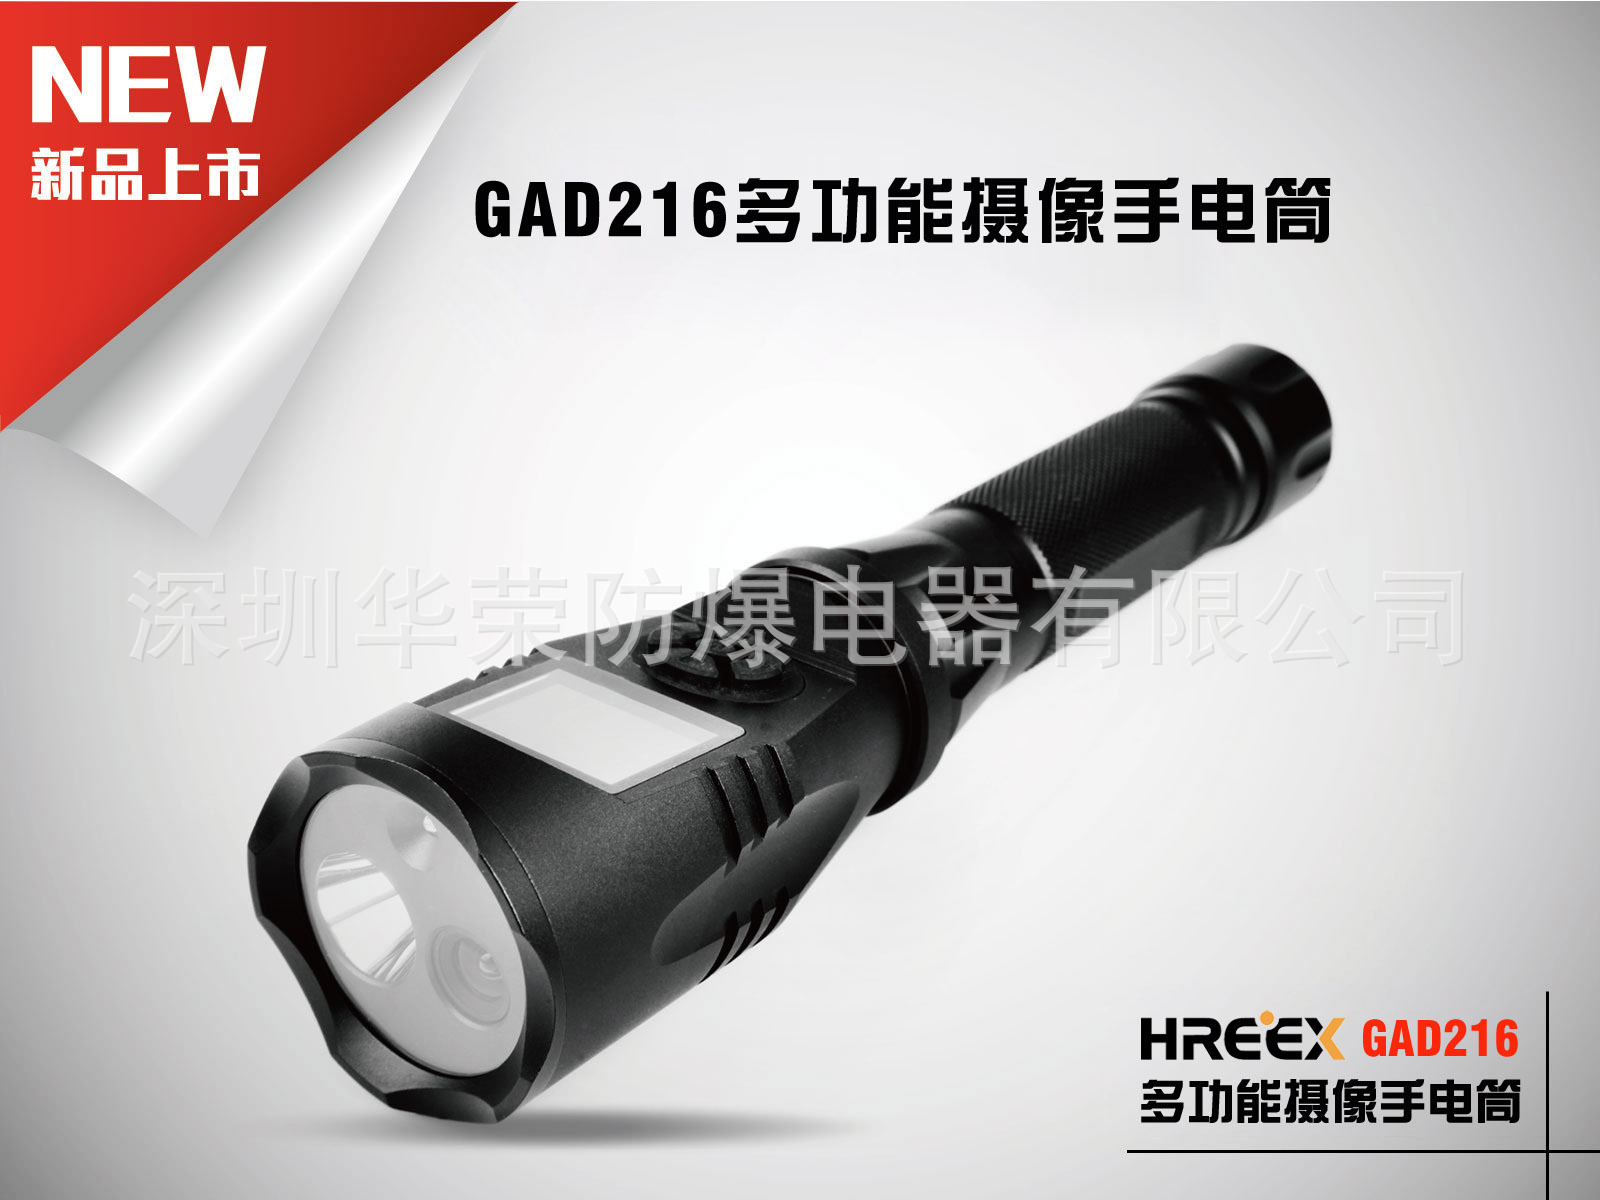 GAD216 多功能摄像手电 多功能录像手电 强光摄像手电筒 直销 GAD216,GAD216多功能摄像手电,GAD216多功能摄像手电,GAD216强光摄像手电筒,GAD216直销